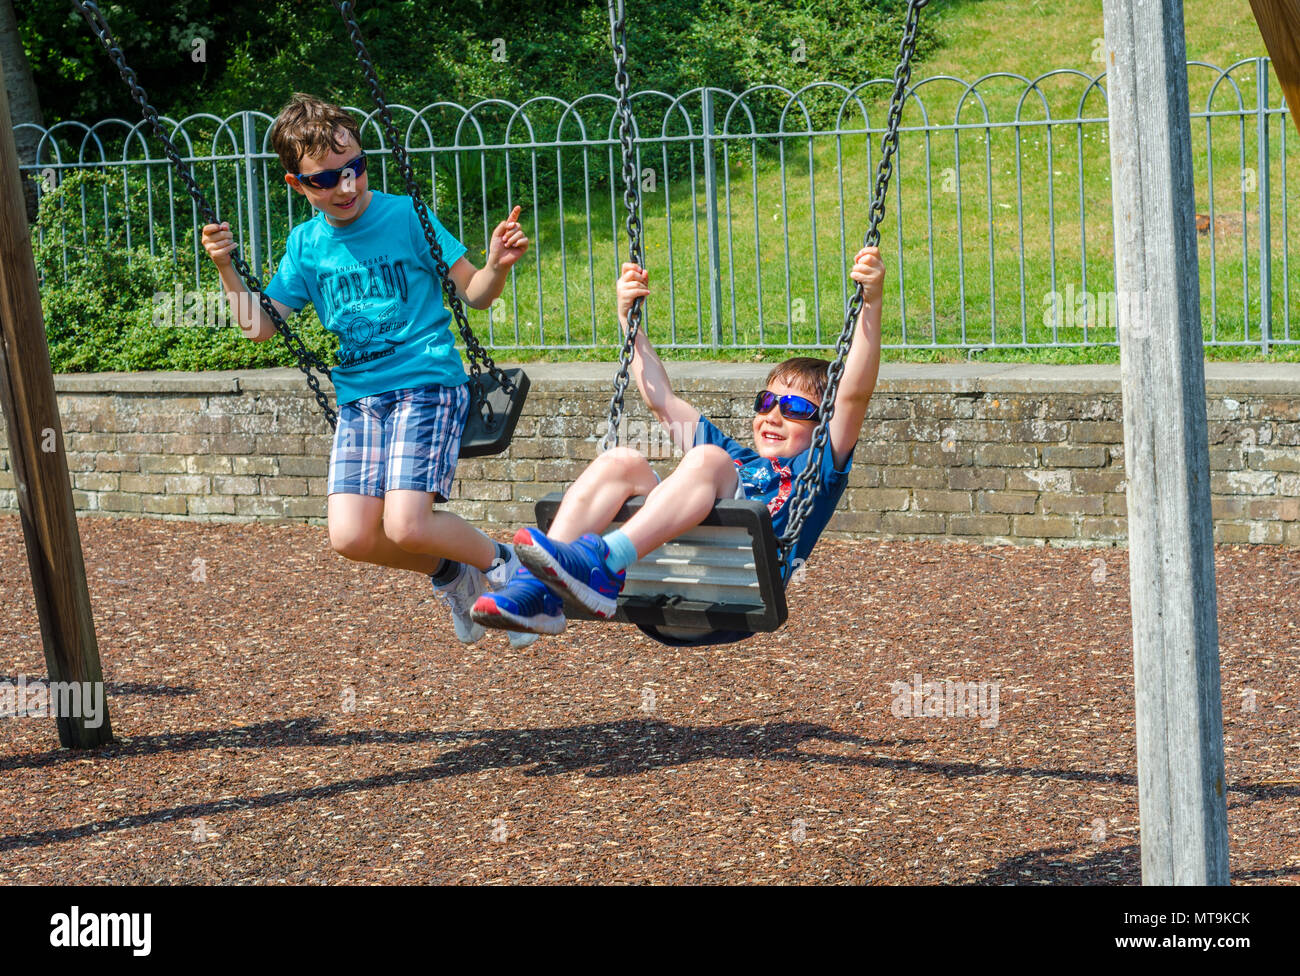 Les jeunes frères jouent sur les variations de l'aire de jeux pour enfants dans la région de Bachelors Acre à Windsor, Royaume-Uni. Banque D'Images